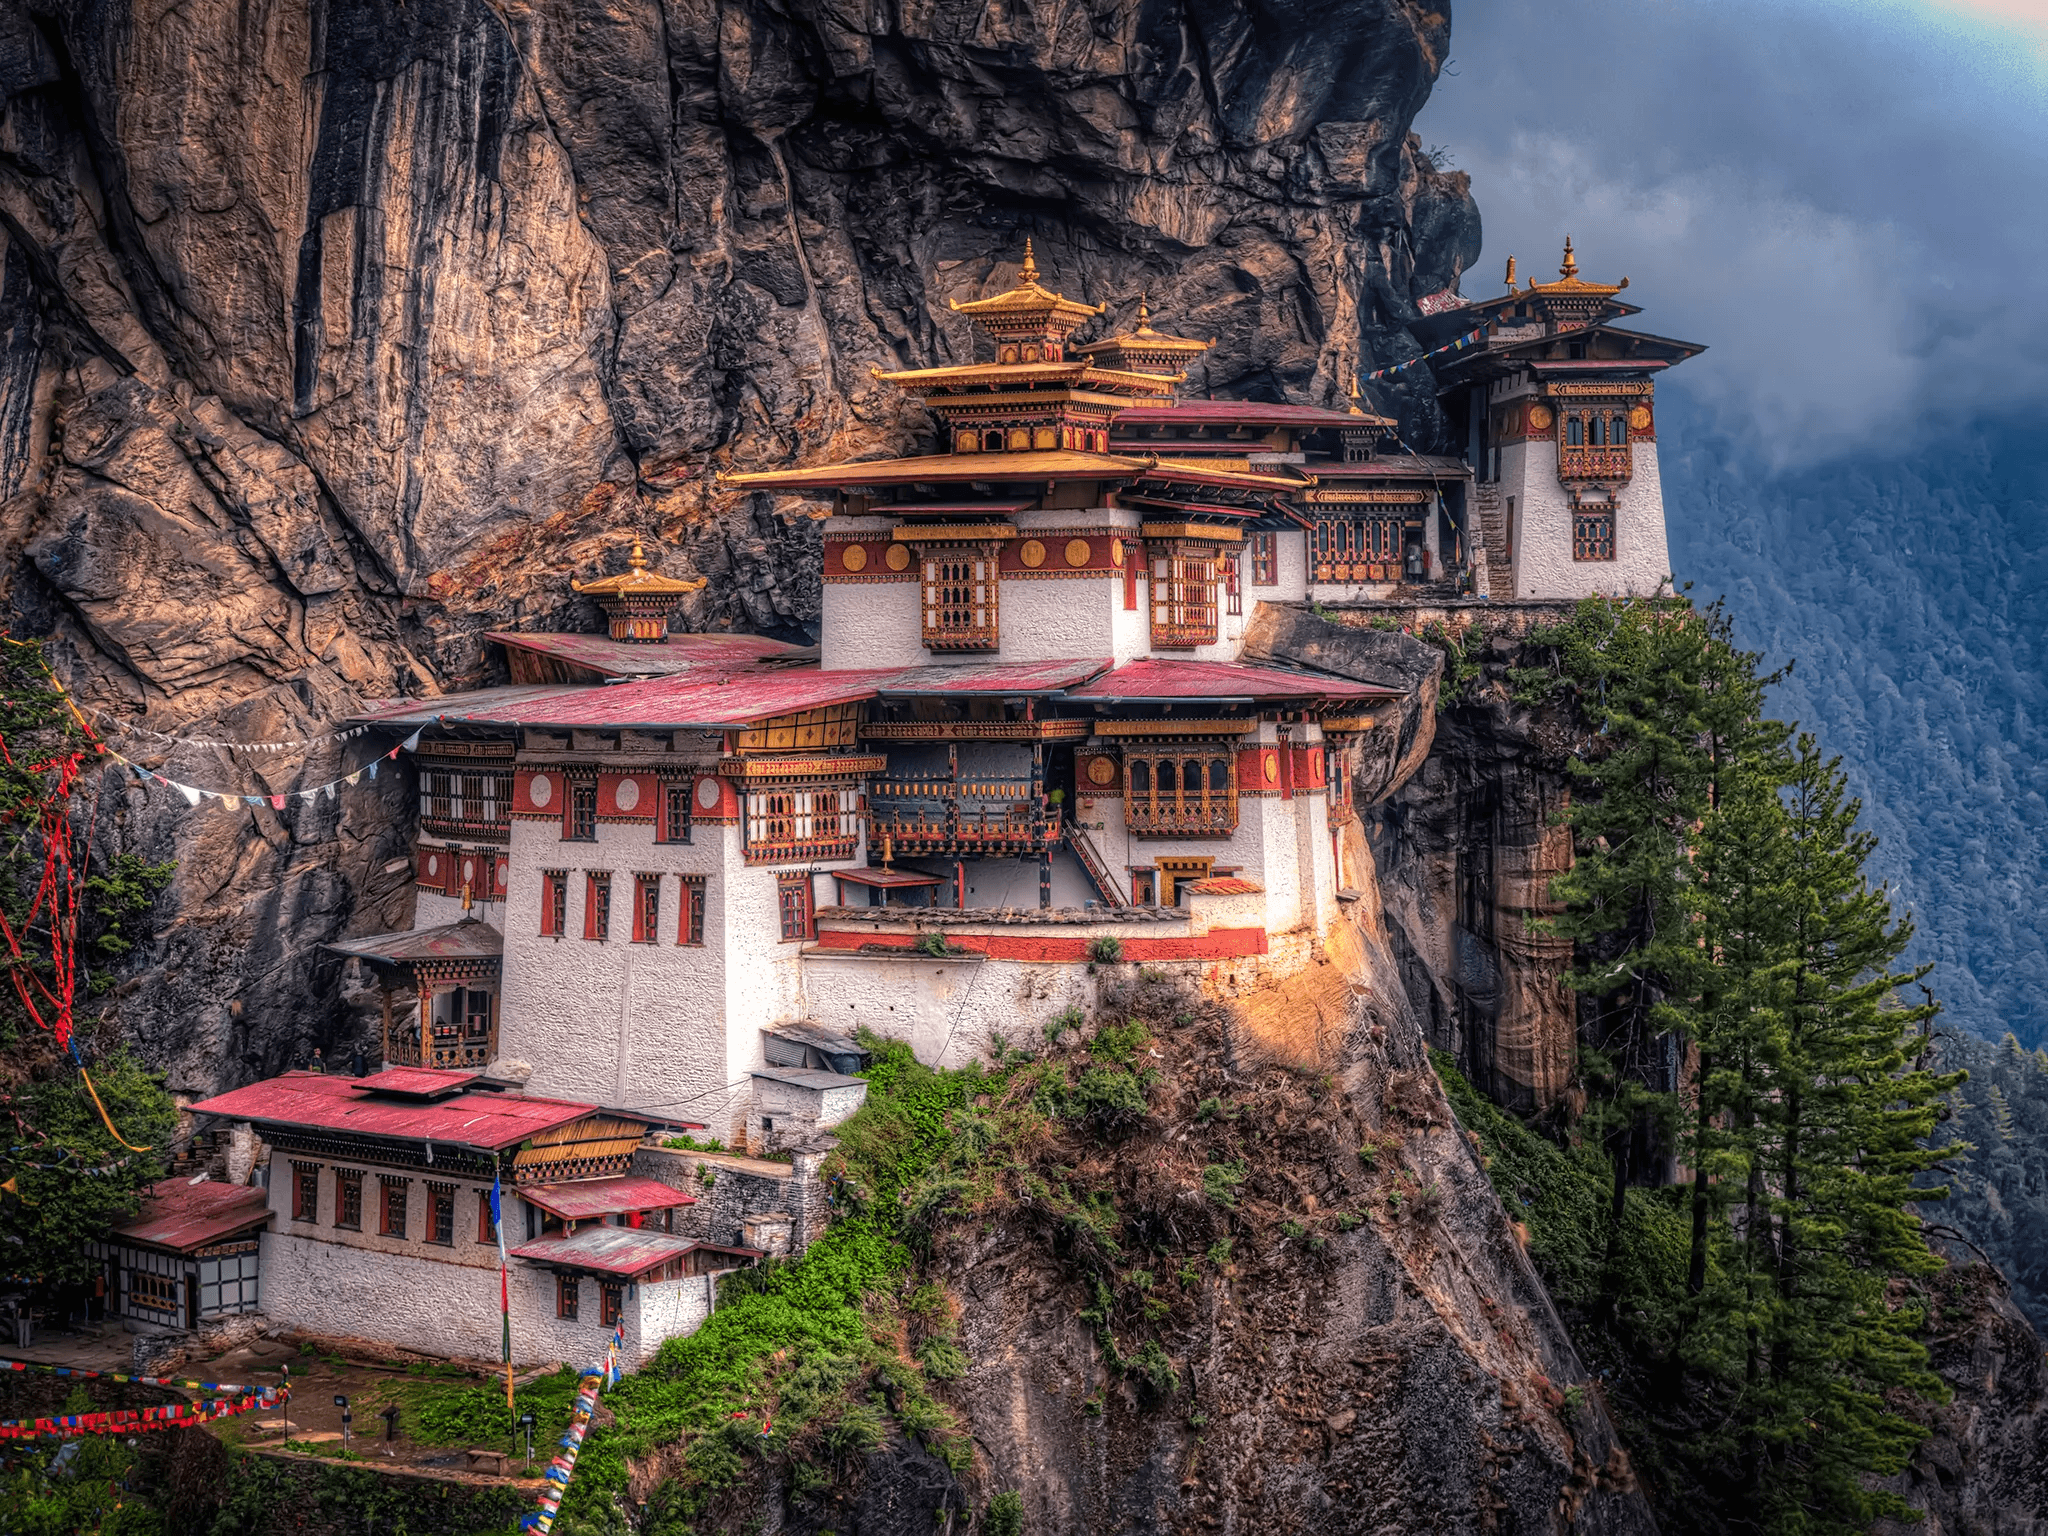 Figure 1: Scenery from Bhutan